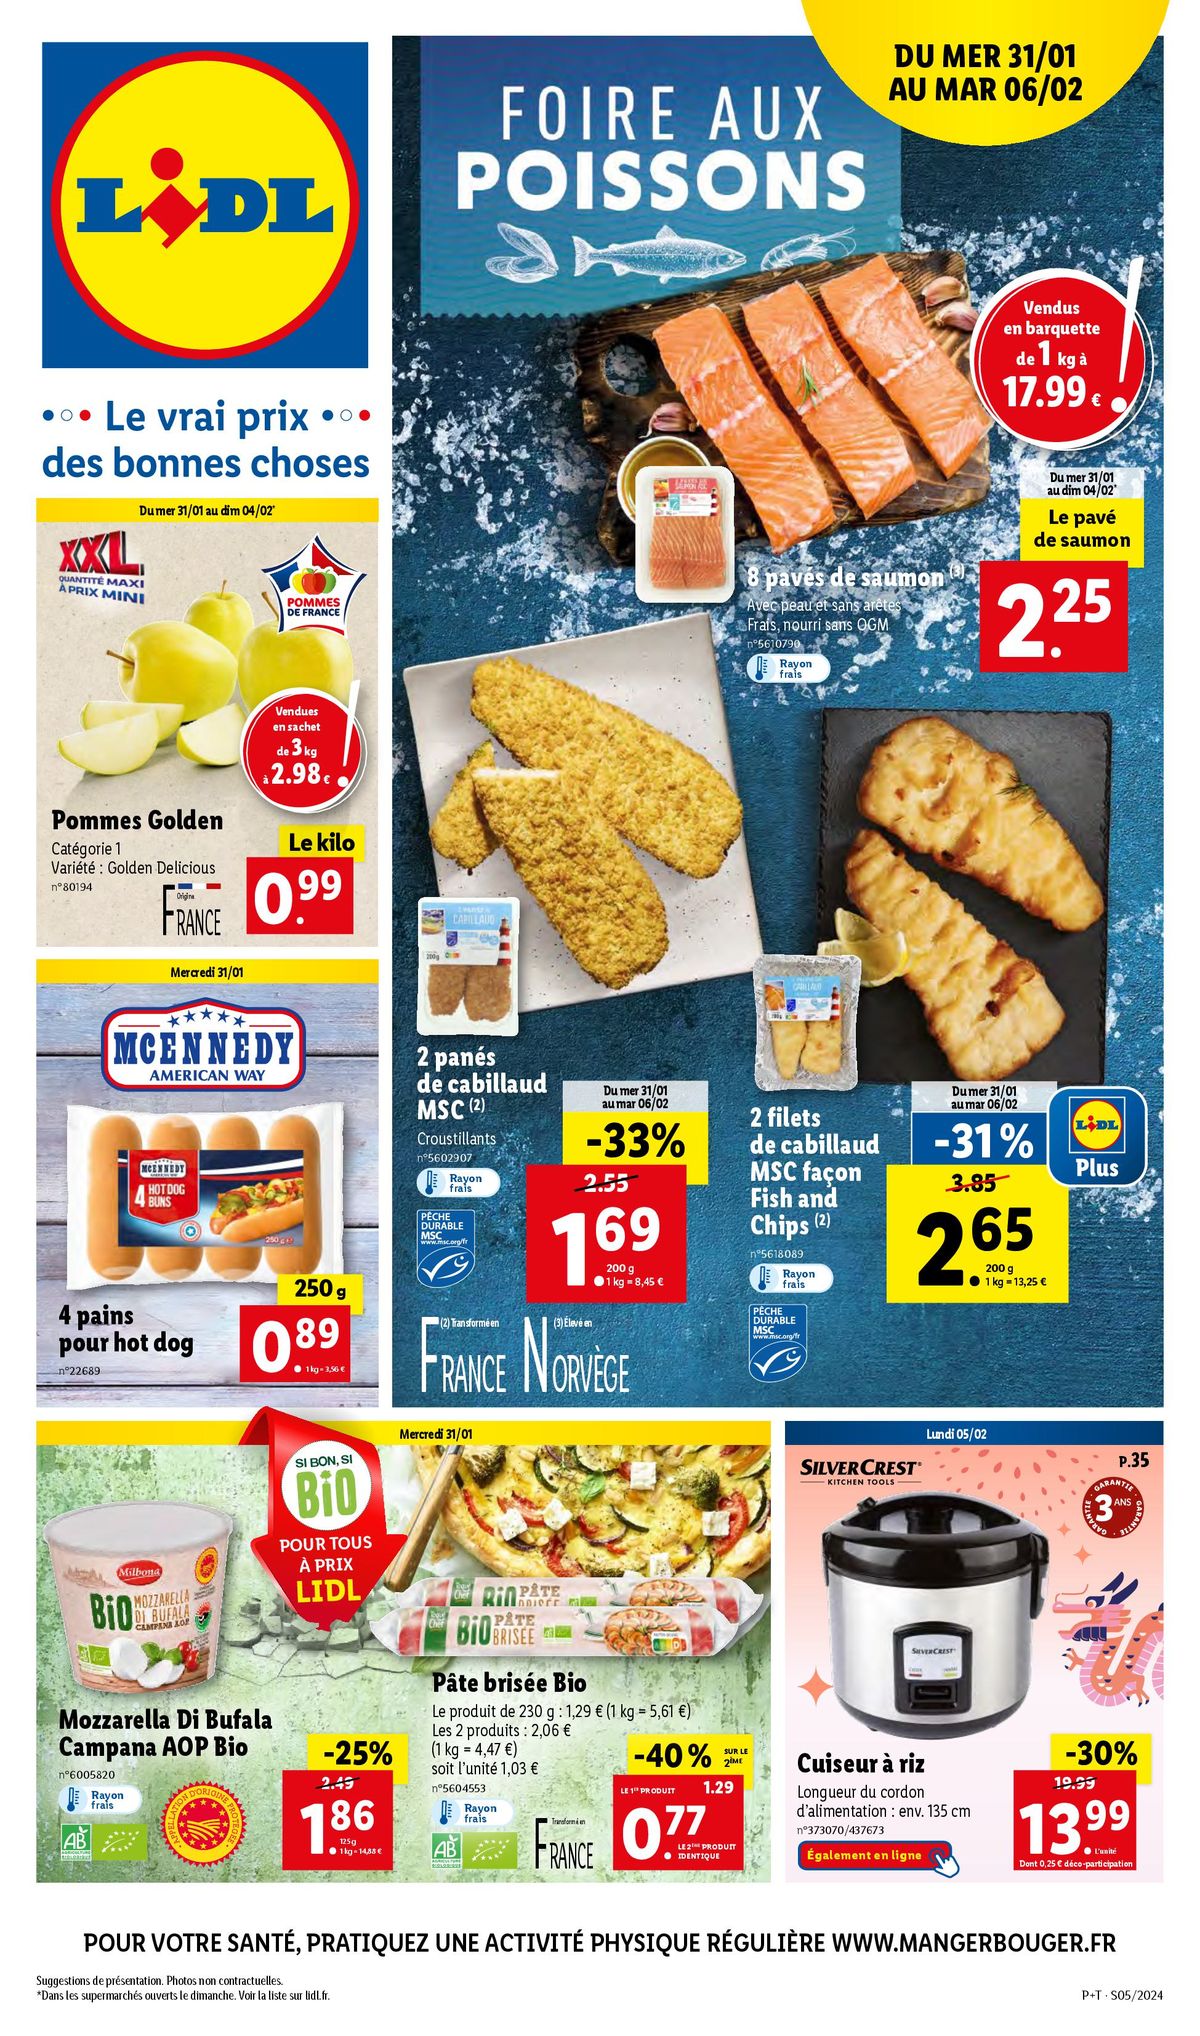 Catalogue Foire aux poissons Lidl, page 00001